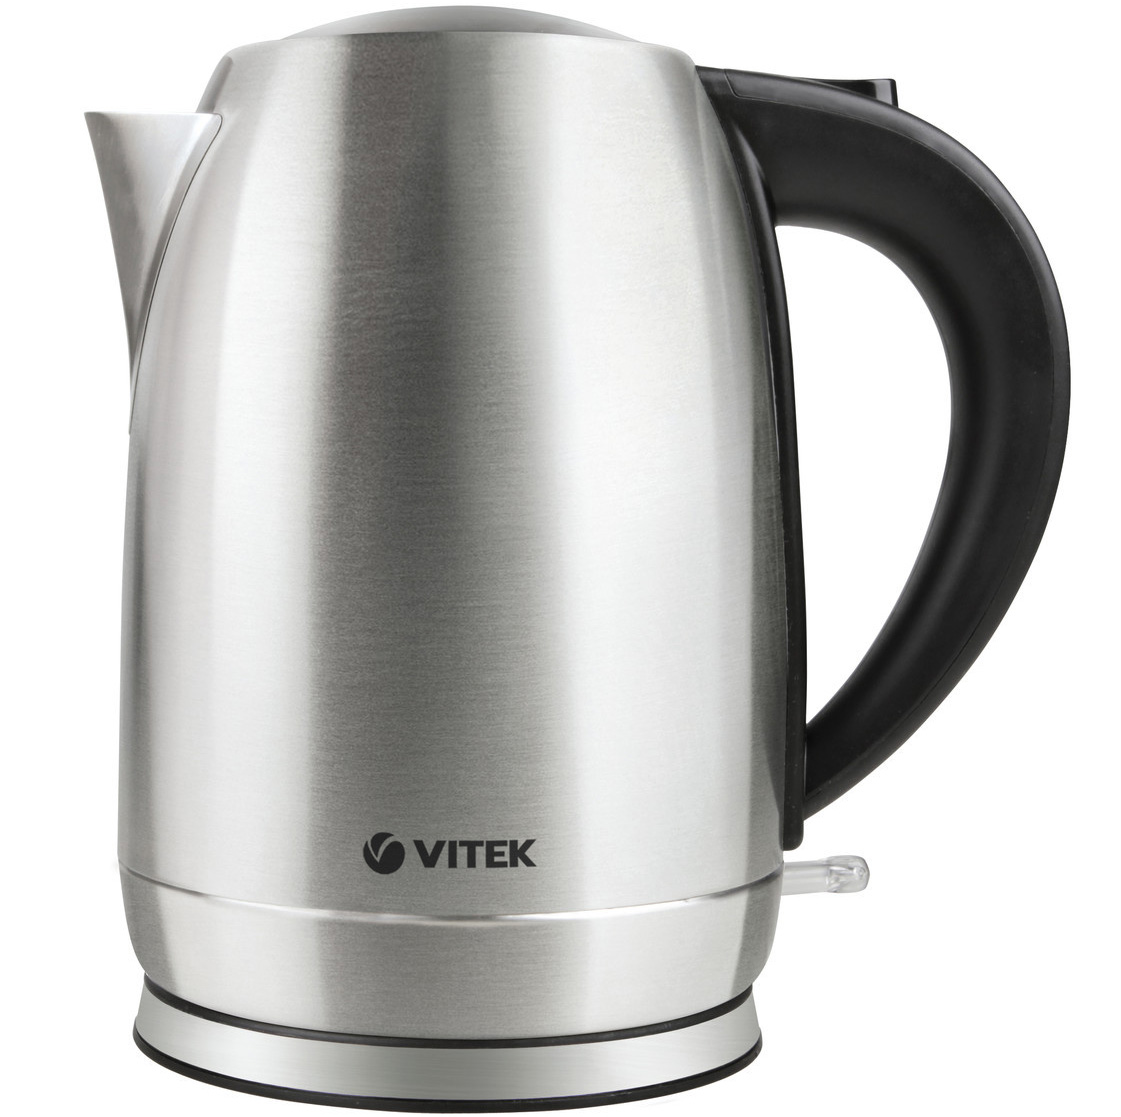 Чайник VITEK VT-7033 2200W, 1.7л, сталь, вращается на полдставке.